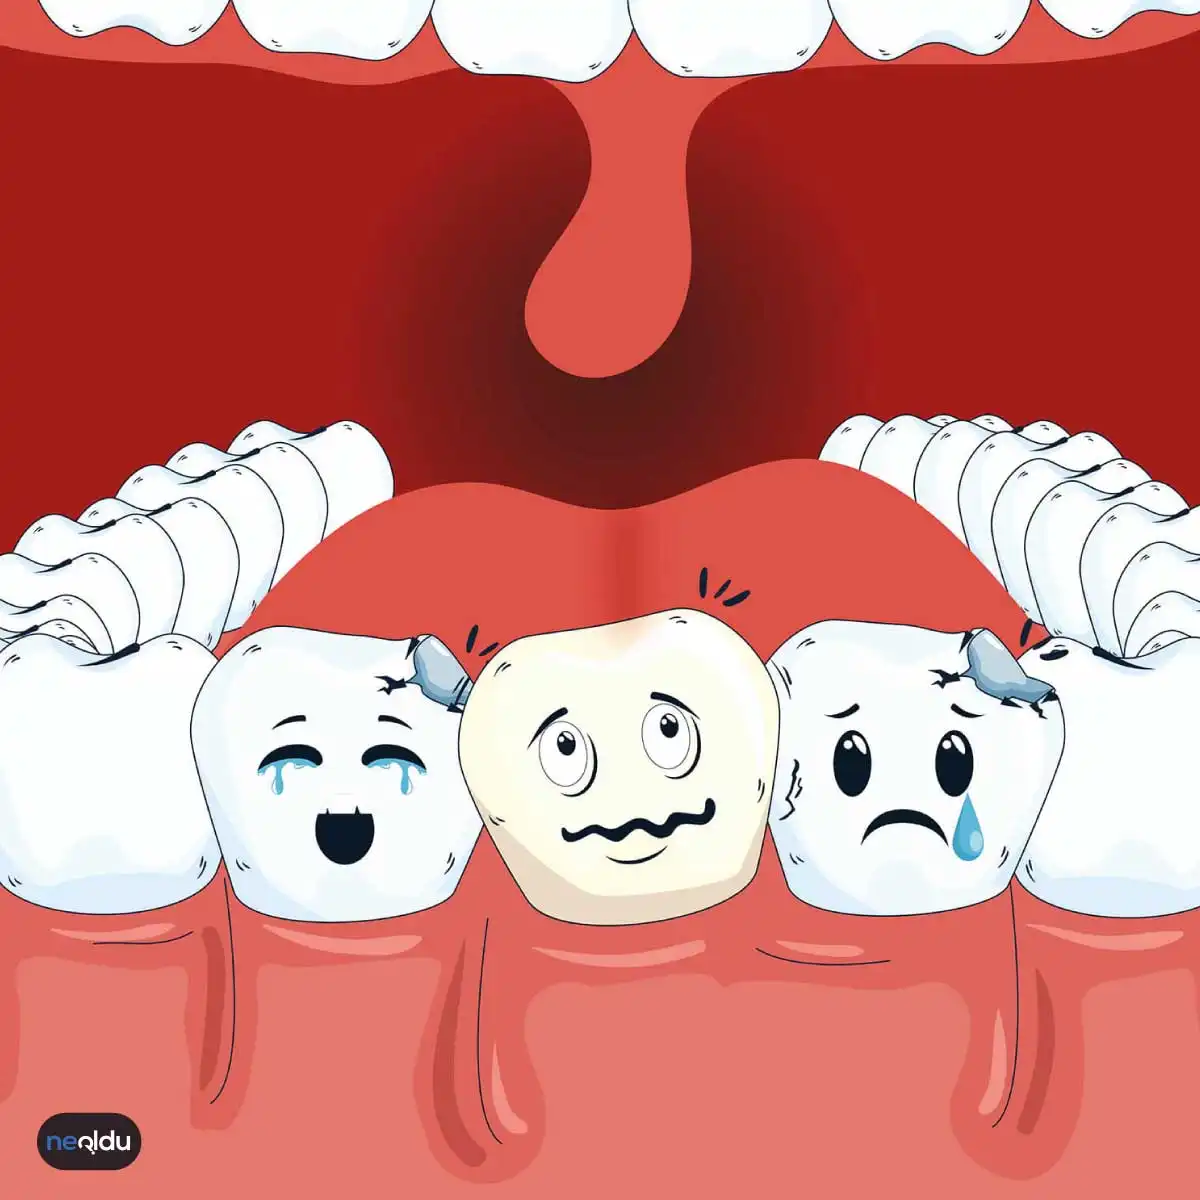 Diş Bakımı ve Diş Temizliği Nasıl Yapılmalı?